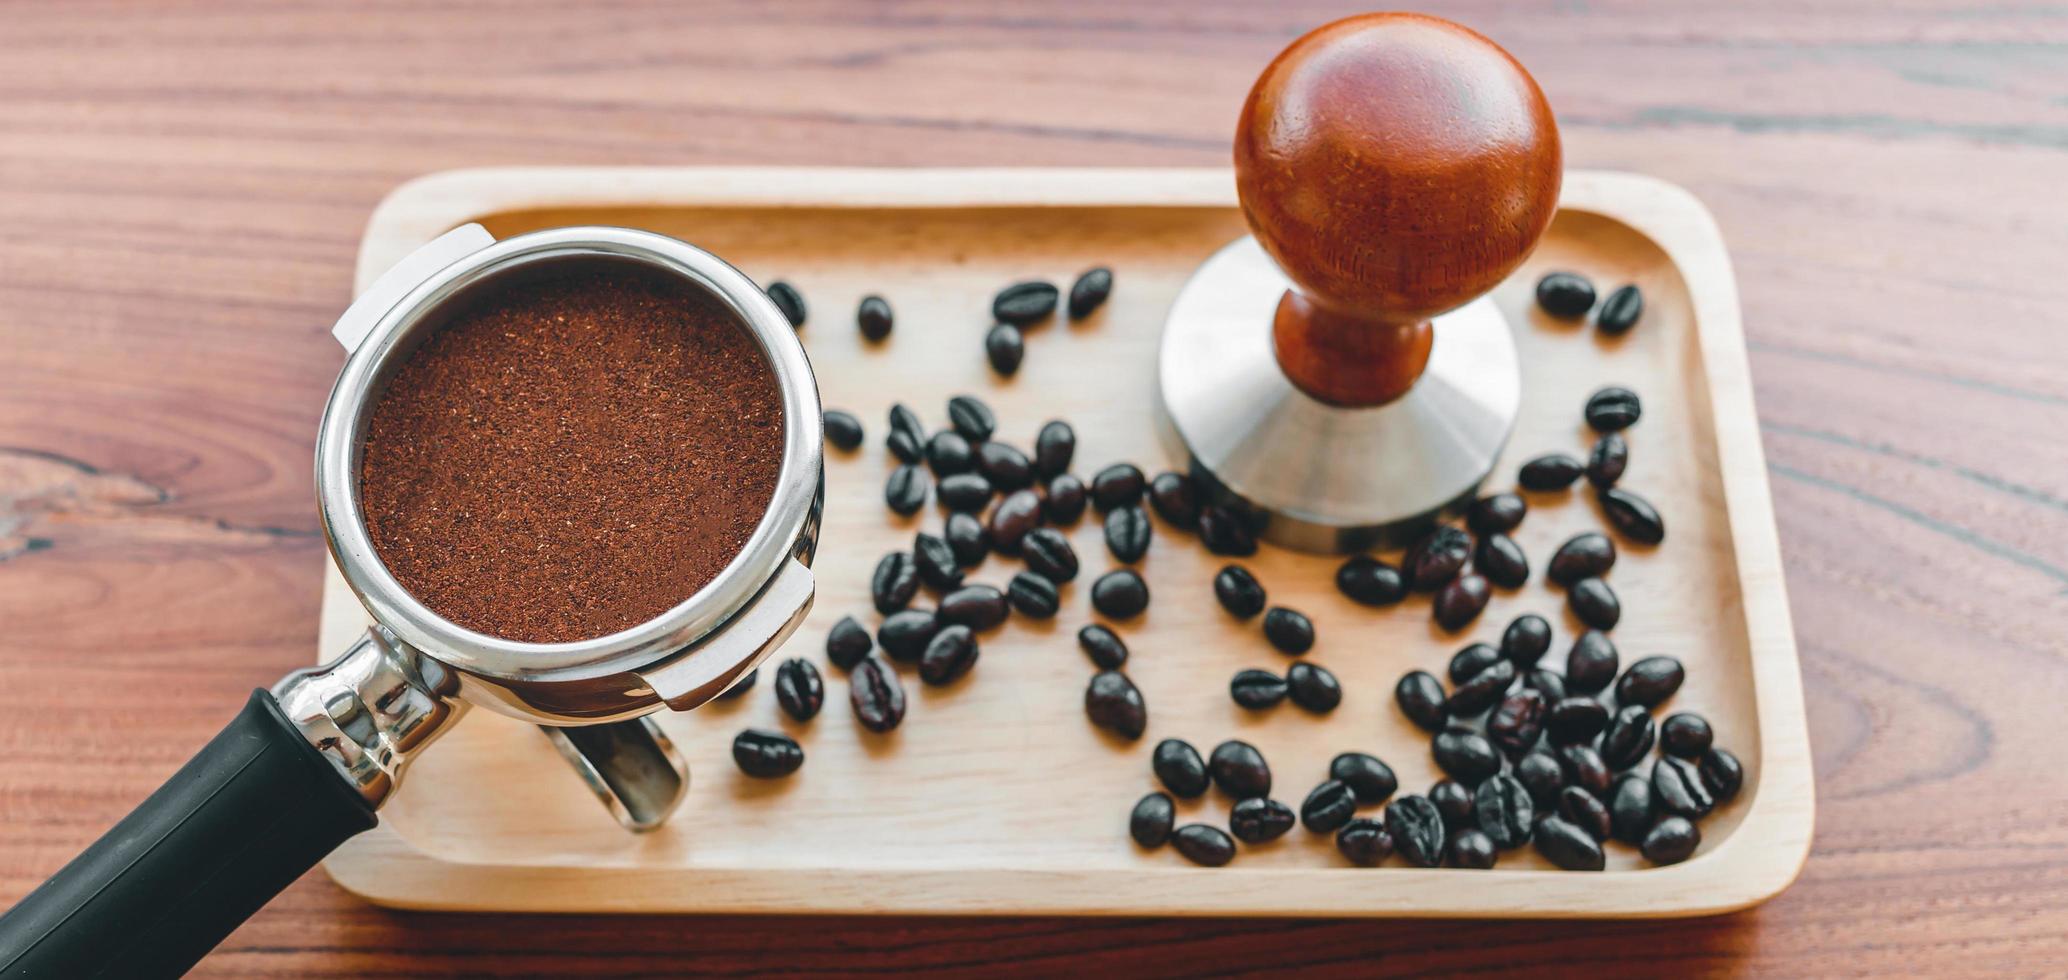 Utrustning av Barista kaffe verktyg manipulera och tempererad kaffe i portafilter rostad kaffe bönor på trä- tabell foto